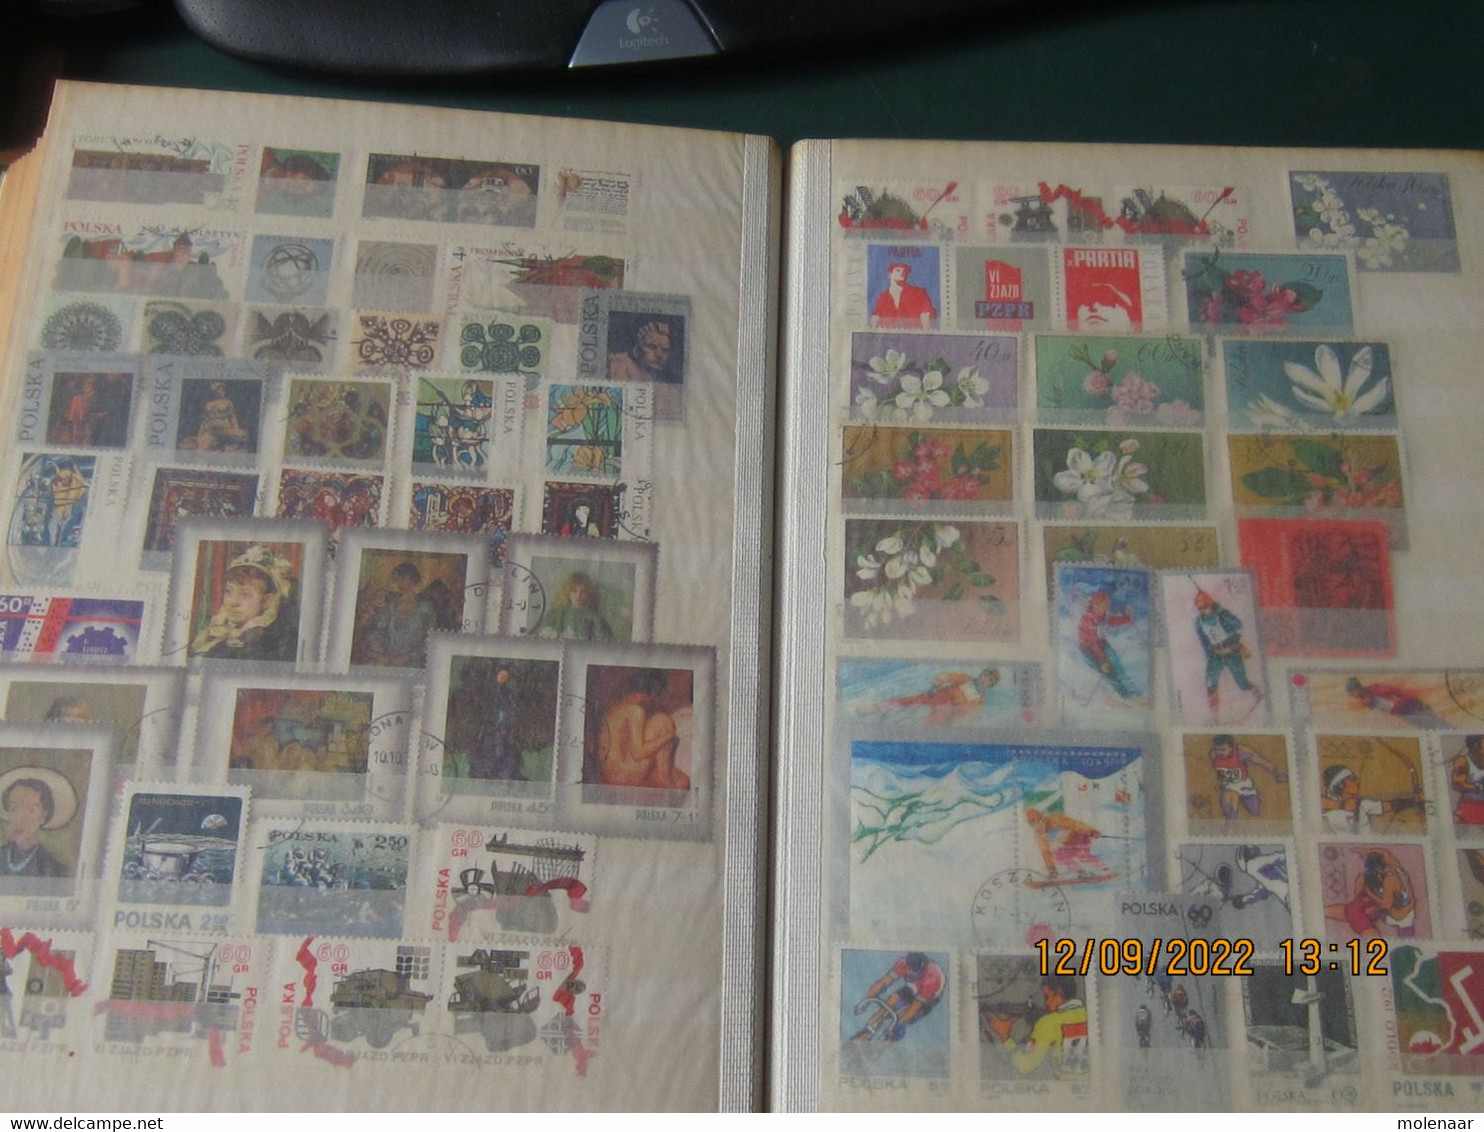 Polen 2 stockboeken met veel gebruikte postzegels veel complete series (8408)